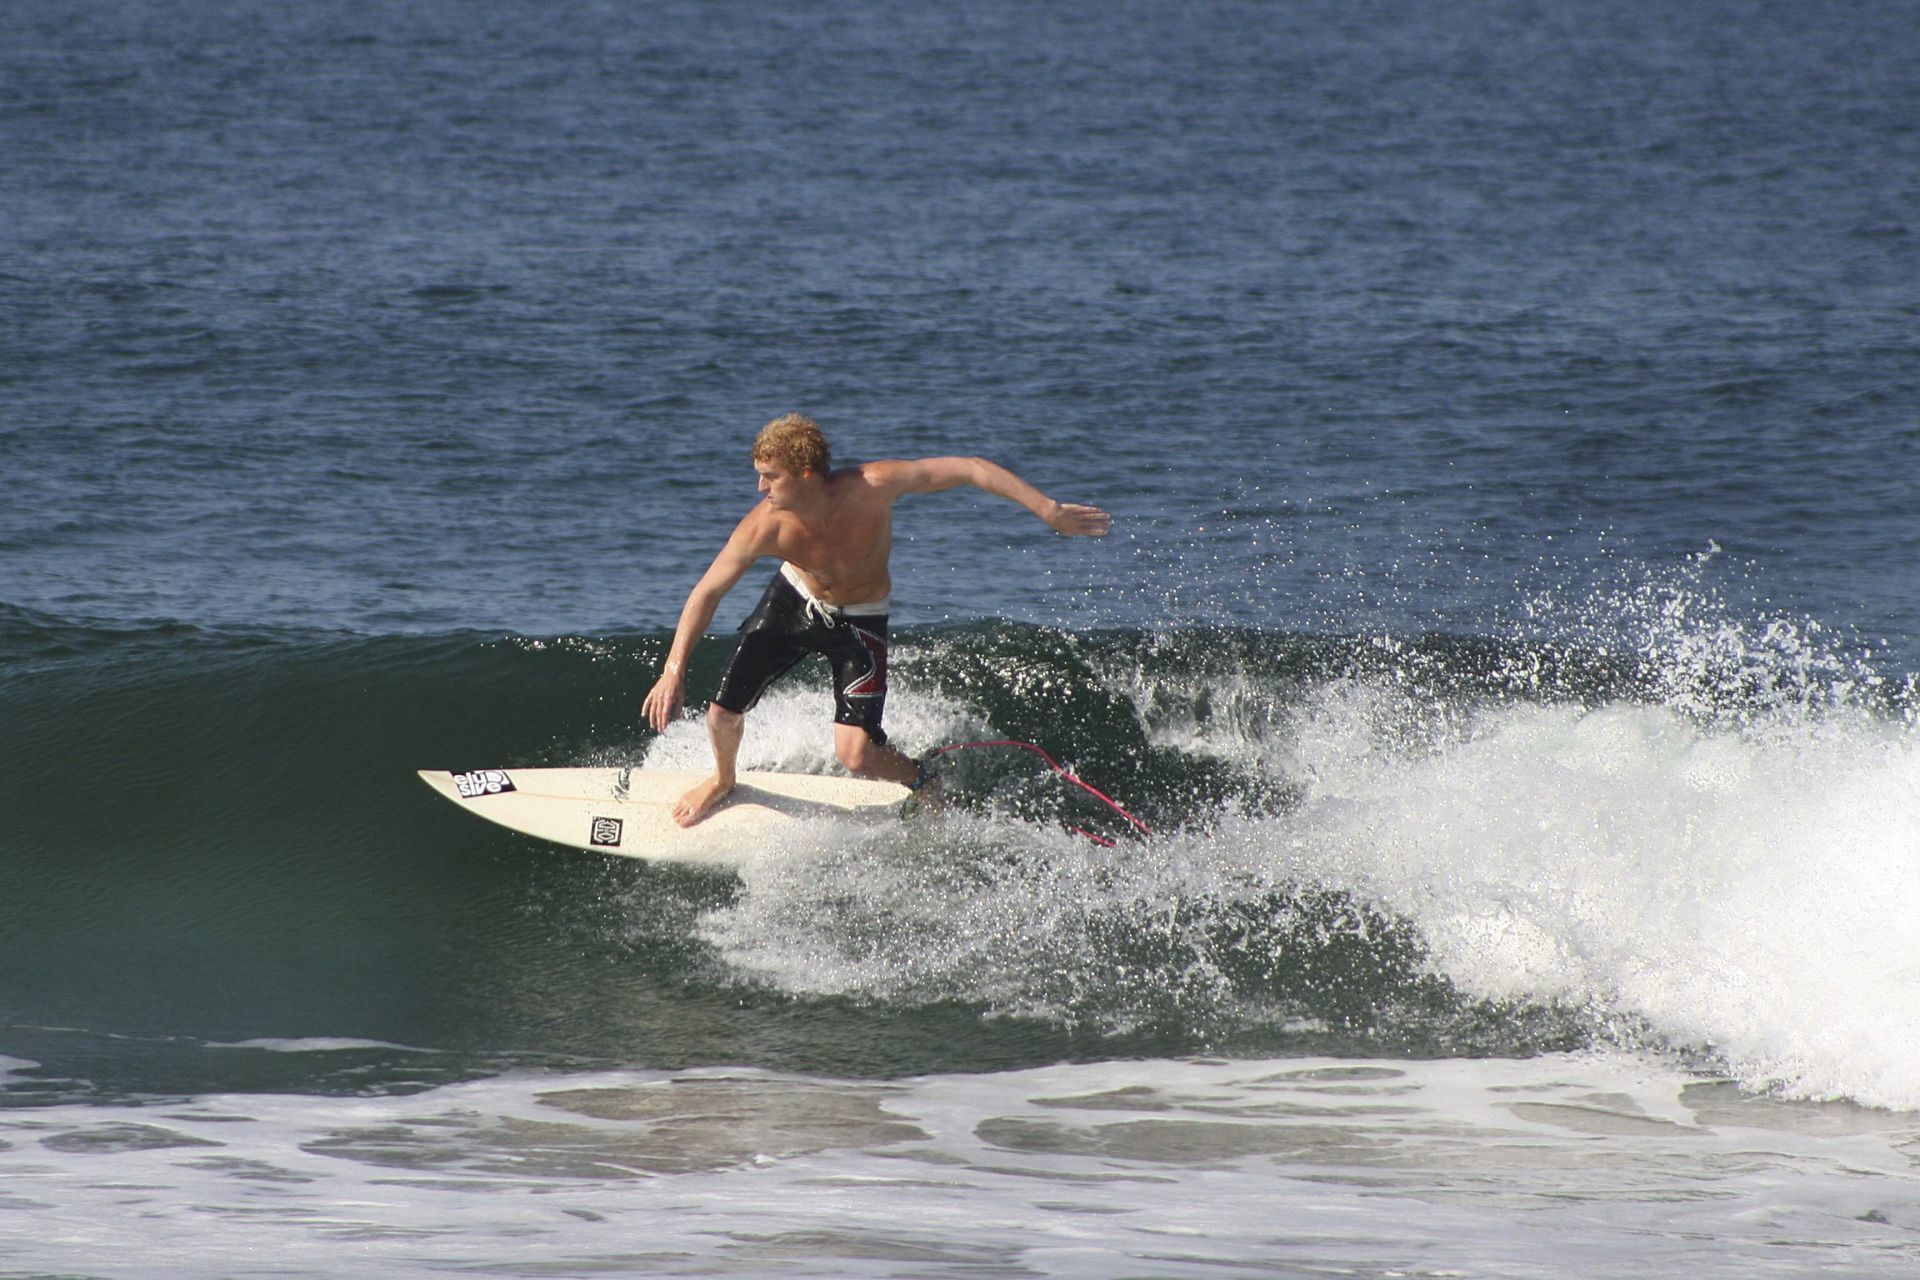 Australia, reconocido país por su cultura del surf, incentiva la llegada de jóvenes de entre 18 y 30 años.
FOTO: ARTURO PÉREZ ALFONSO /CUARTOSCURO.COM